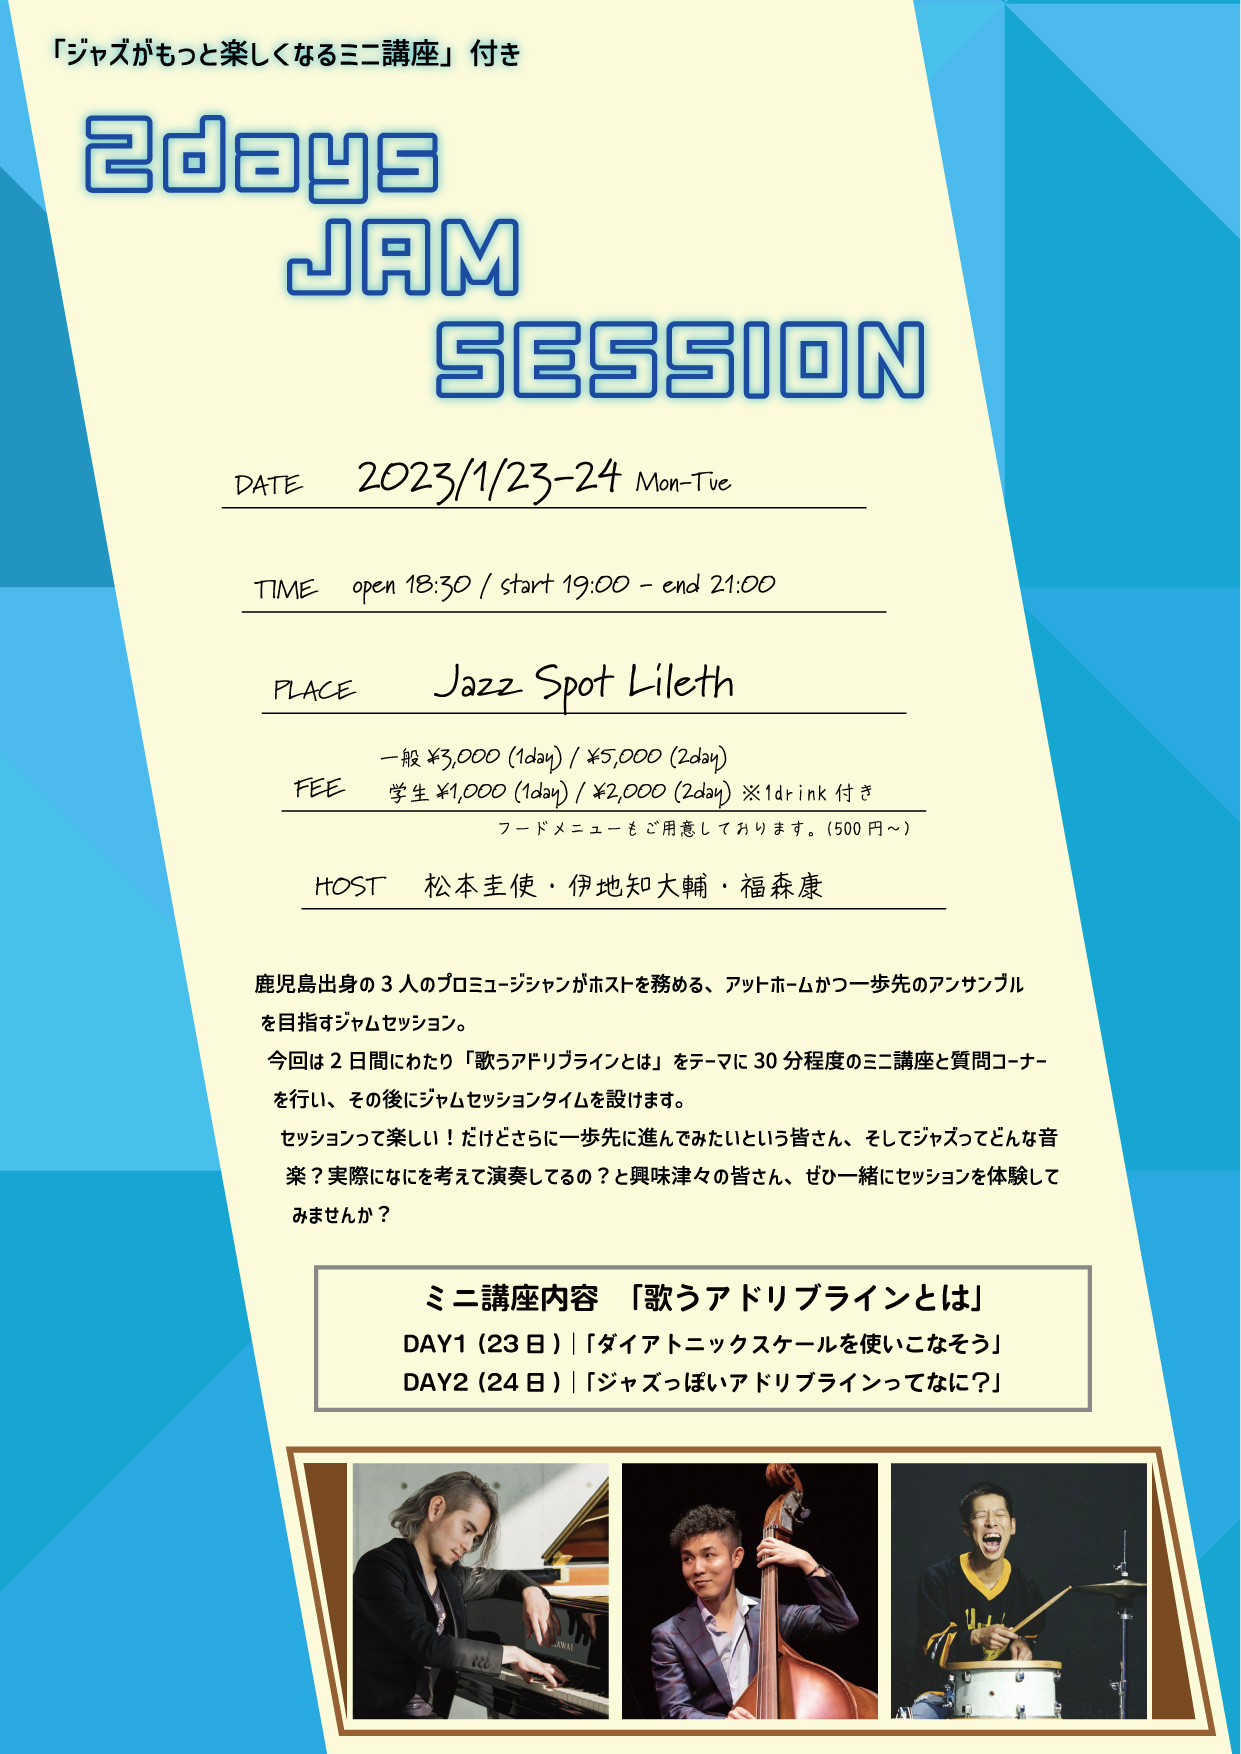 【イベント告知】1/23㊊~24㊋「ジャズがもっと楽しくなるミニ講座」付き 2days JAM SESSION